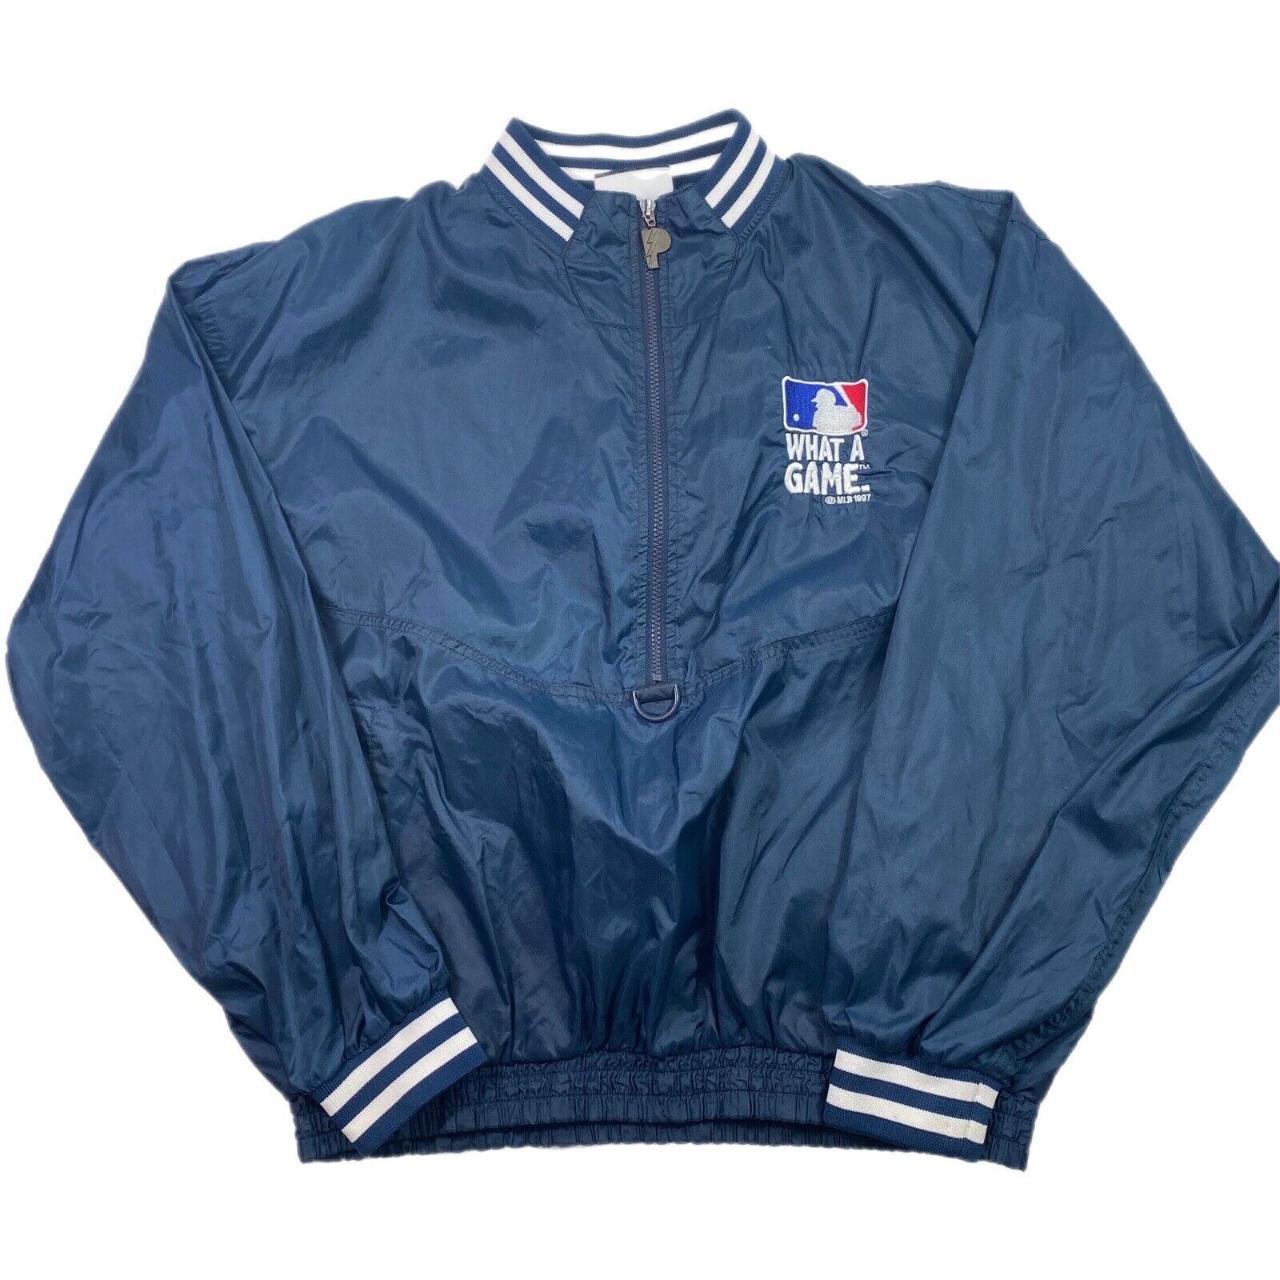 MLB Men's Jacket - Navy - XL